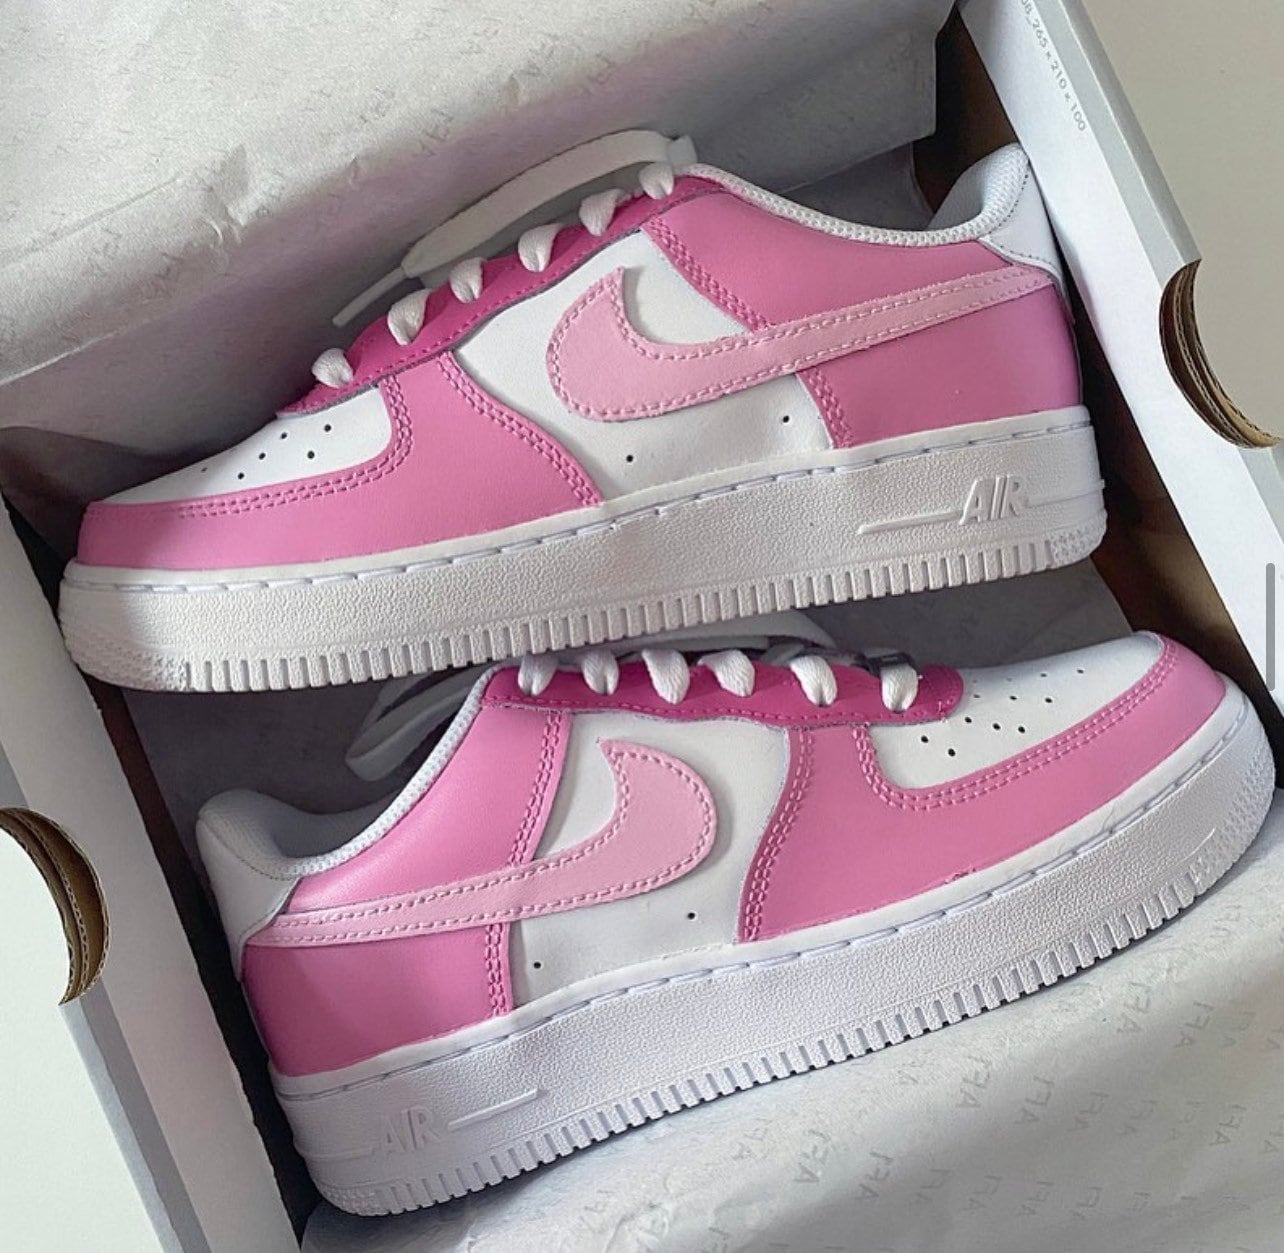 gemak opleggen onderbreken Barbie Pink Custom Nike Air Force 1 Sneakers Customs - Etsy